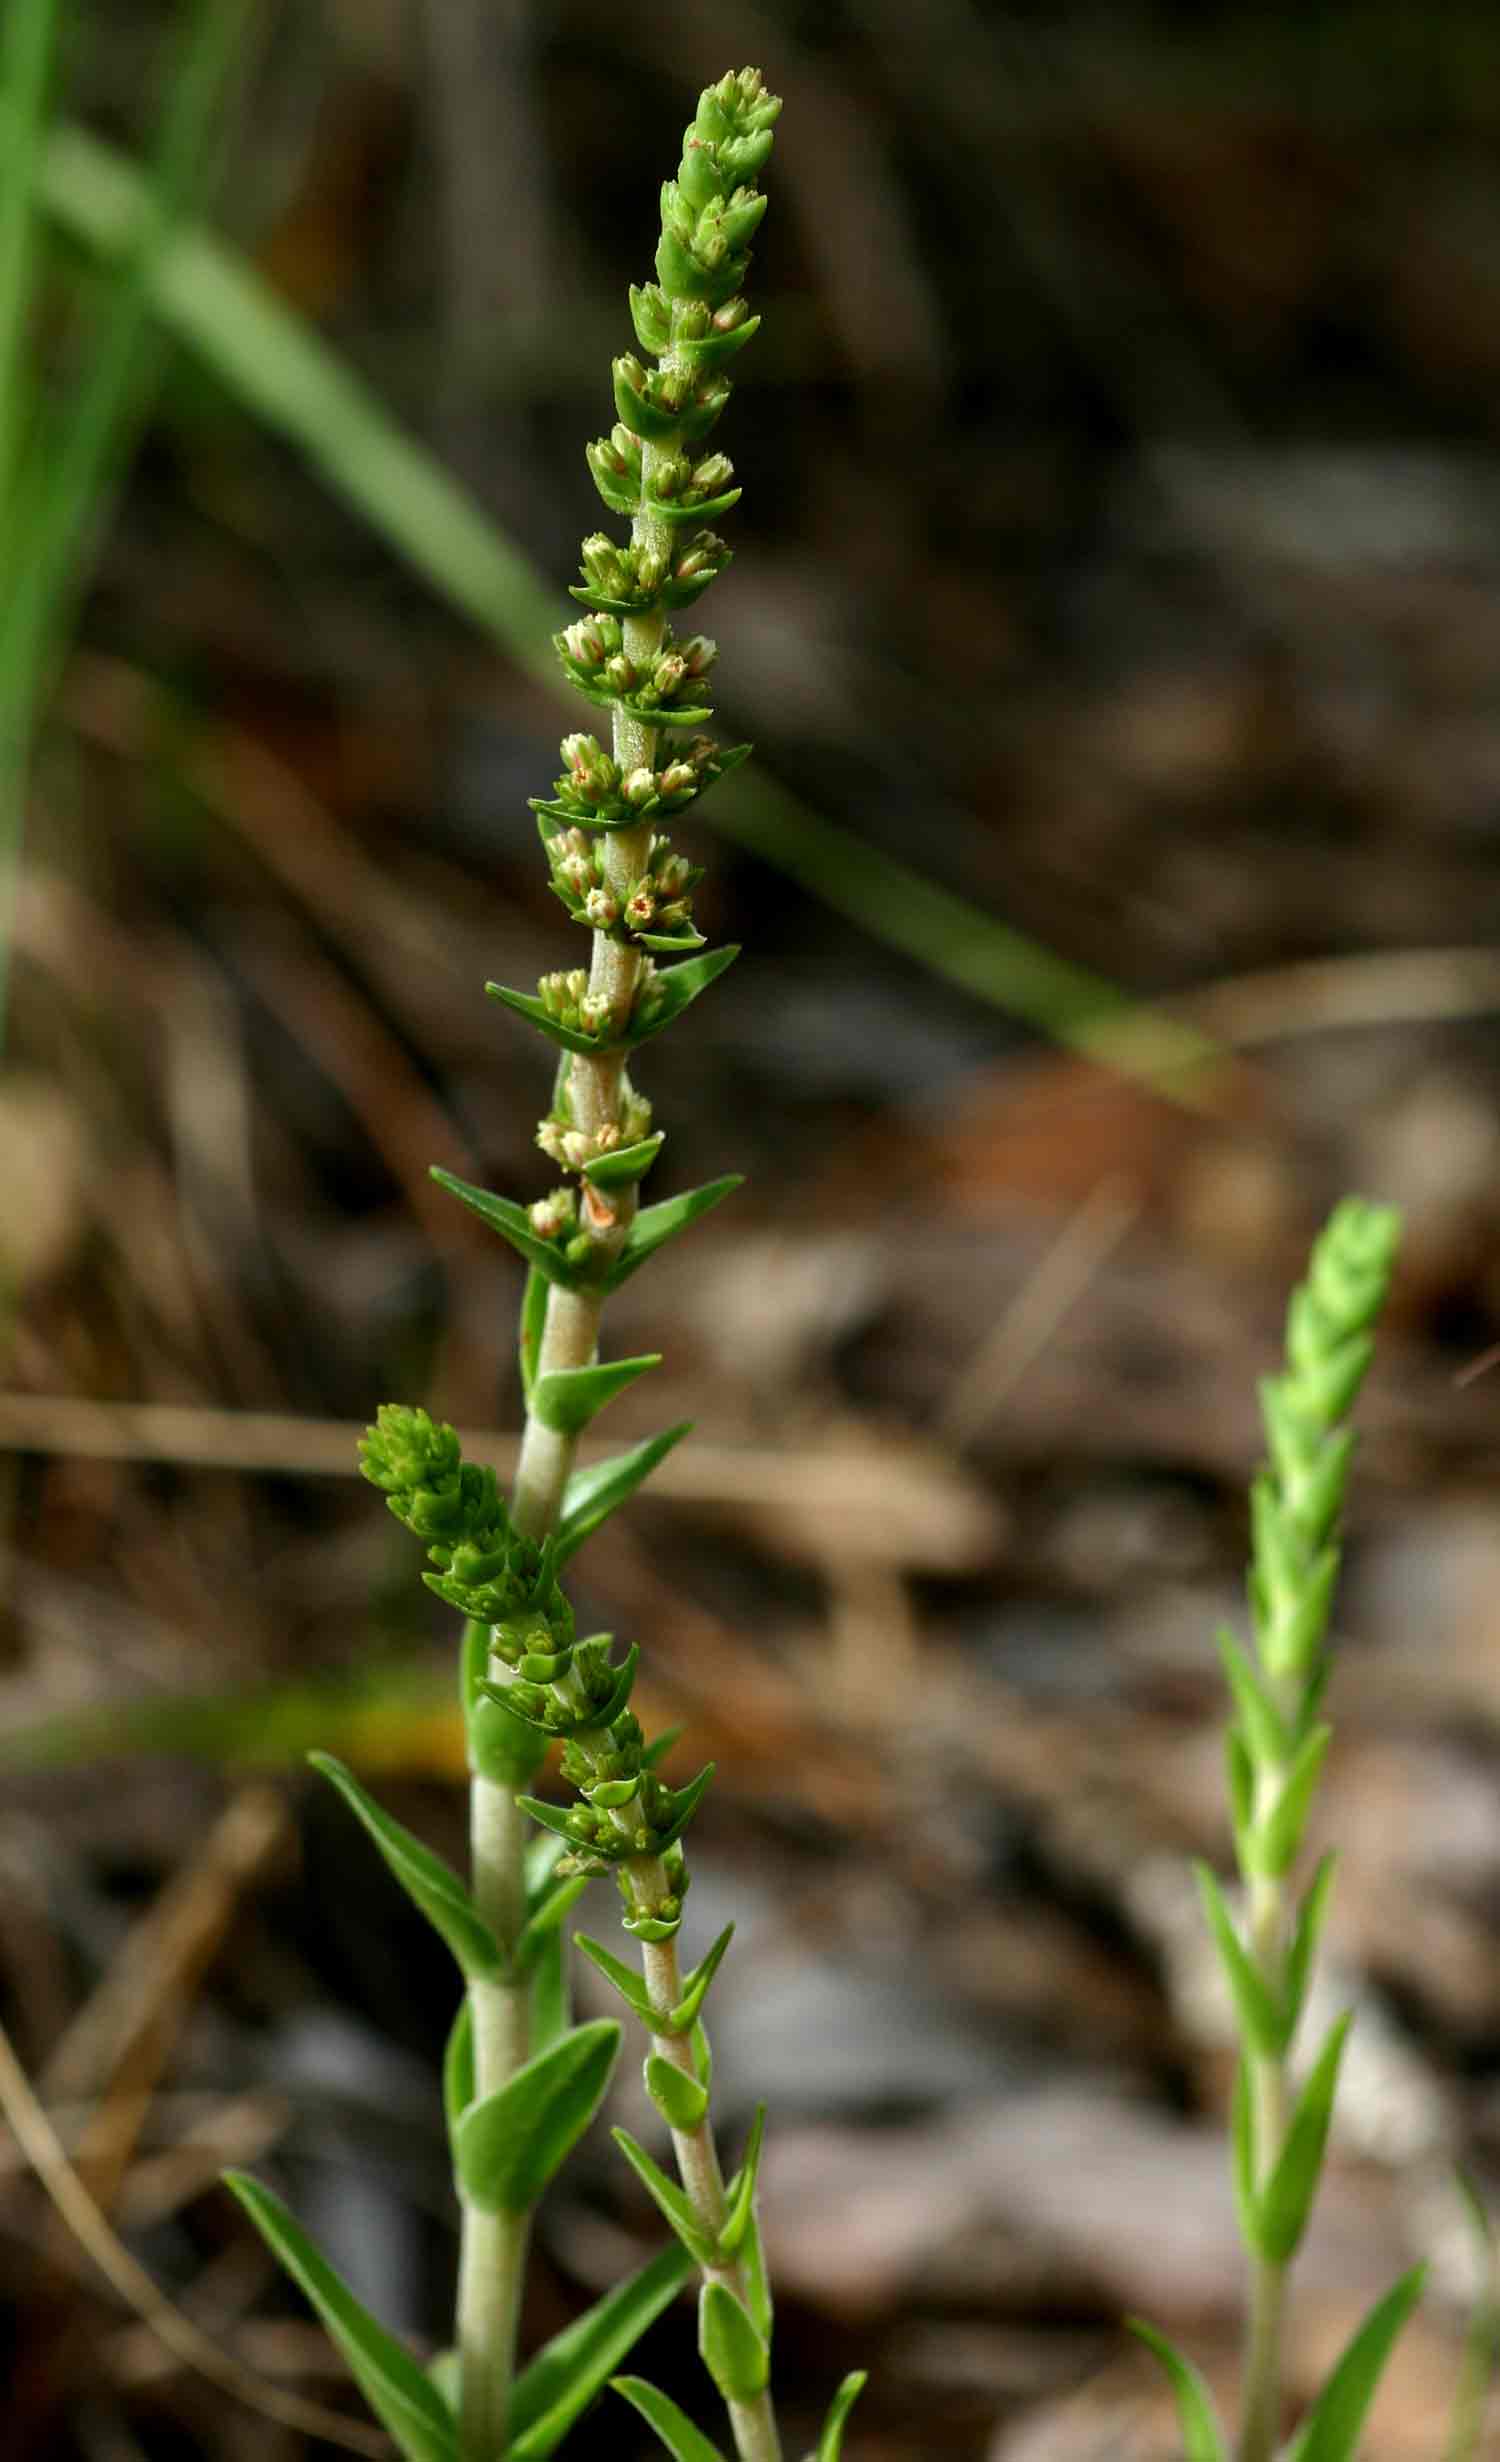 Crassula capitella subsp. nodulosa